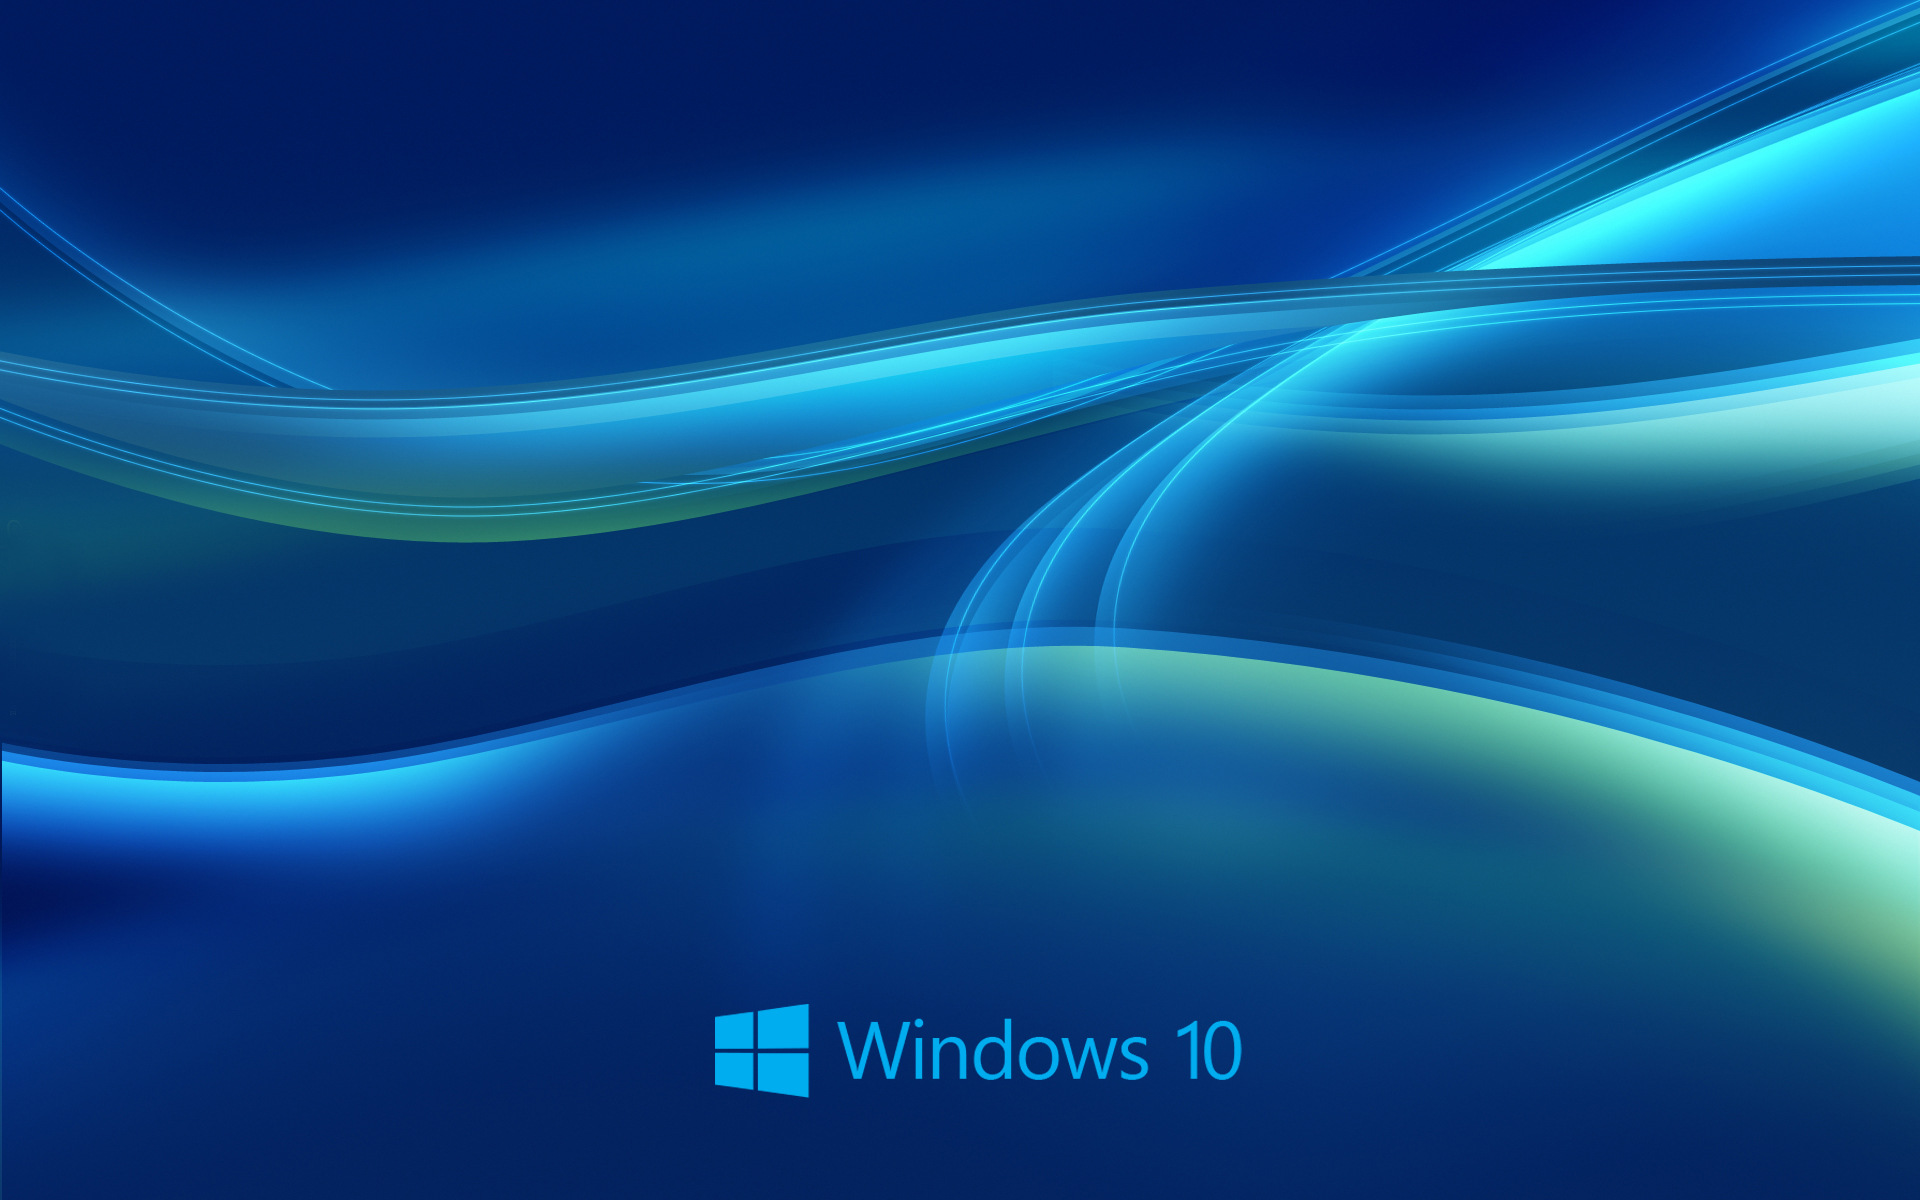 Windows 10 Wallpaper Free Downlaod 12441 Wallpaper High Resolution